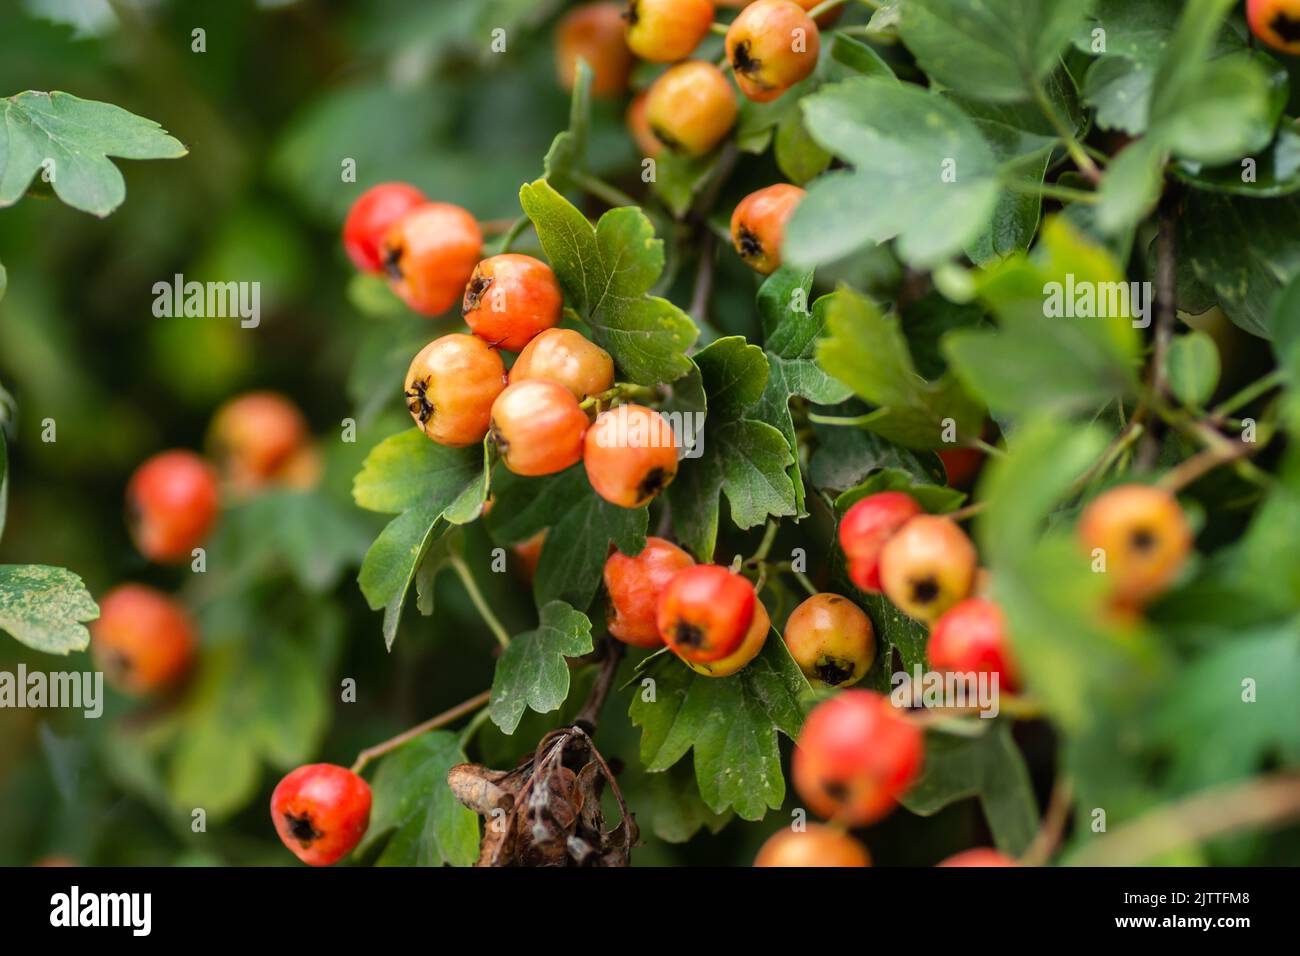 Frutti immaturi su un albero Crataegus in estate. Crataegus biancospino, biancospino, ananas, albero di maggio, biancospino, frutti di bosco maturi rossi sul ramo wit Foto Stock